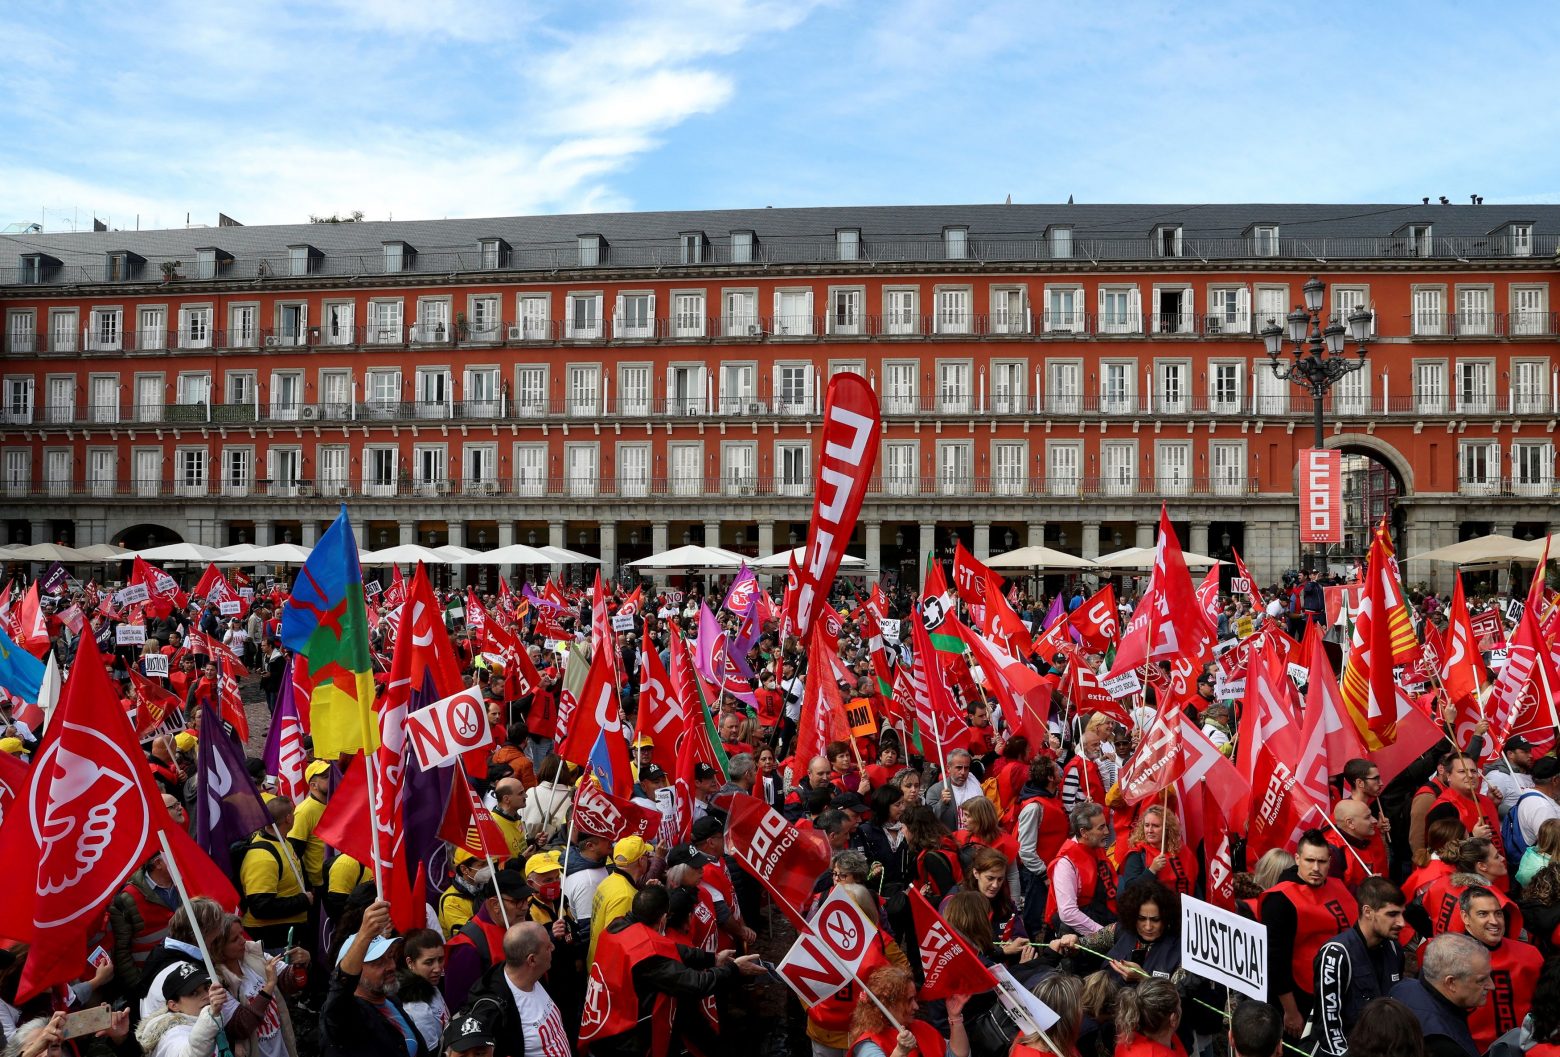 Ισπανία: Διαδήλωση στη Μαδρίτη για την αύξηση των μισθών - Τα συνδικάτα απειλούν να συνεχίσουν τις κινητοποιήσεις τους